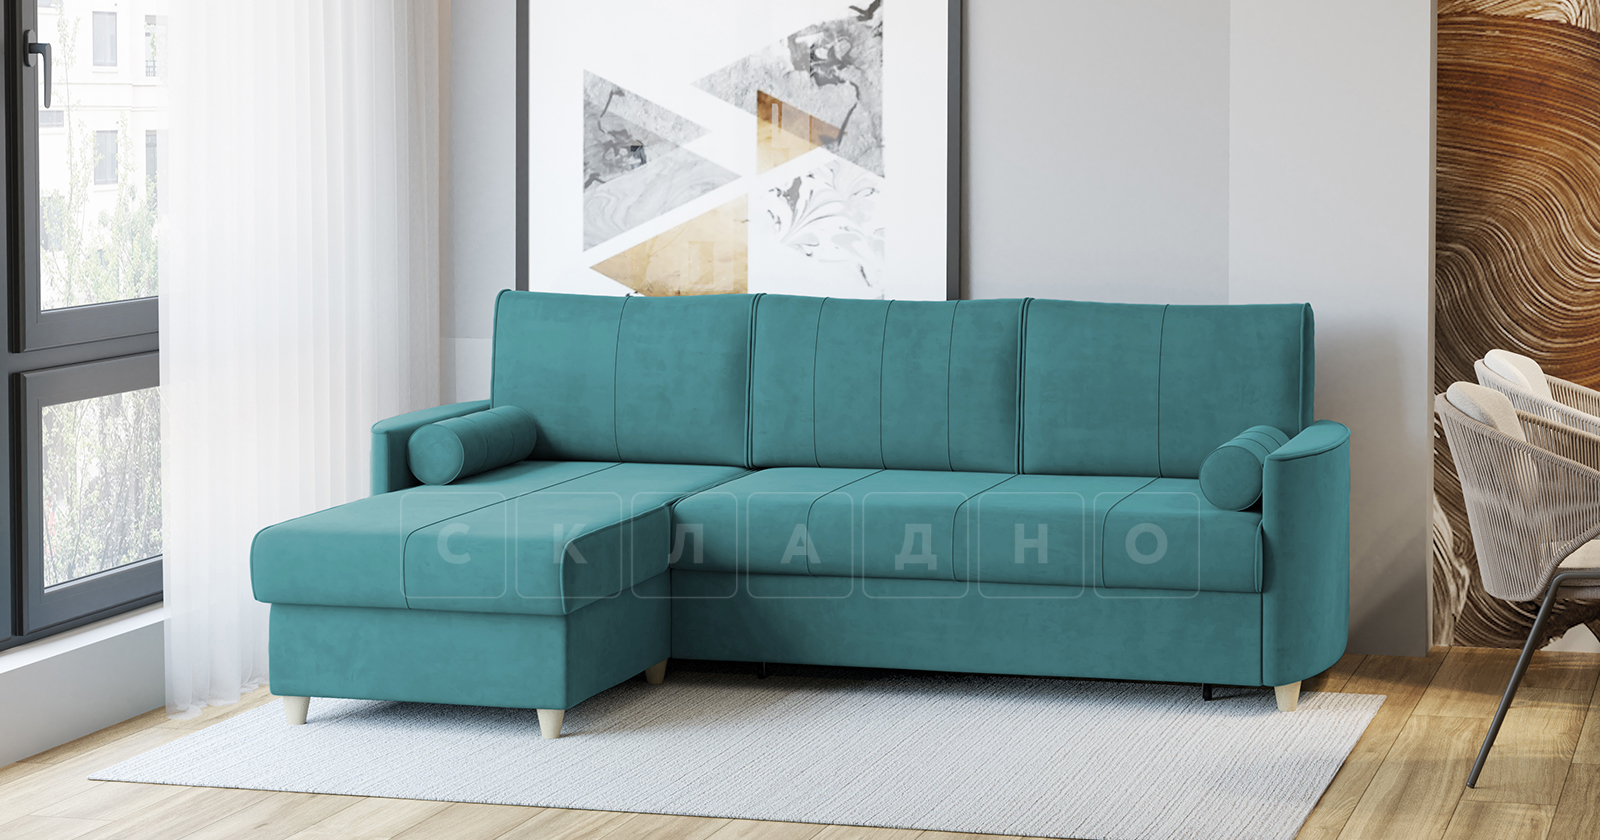 Угловой диван Лорен бирюзовый фото 2 | интернет-магазин Складно